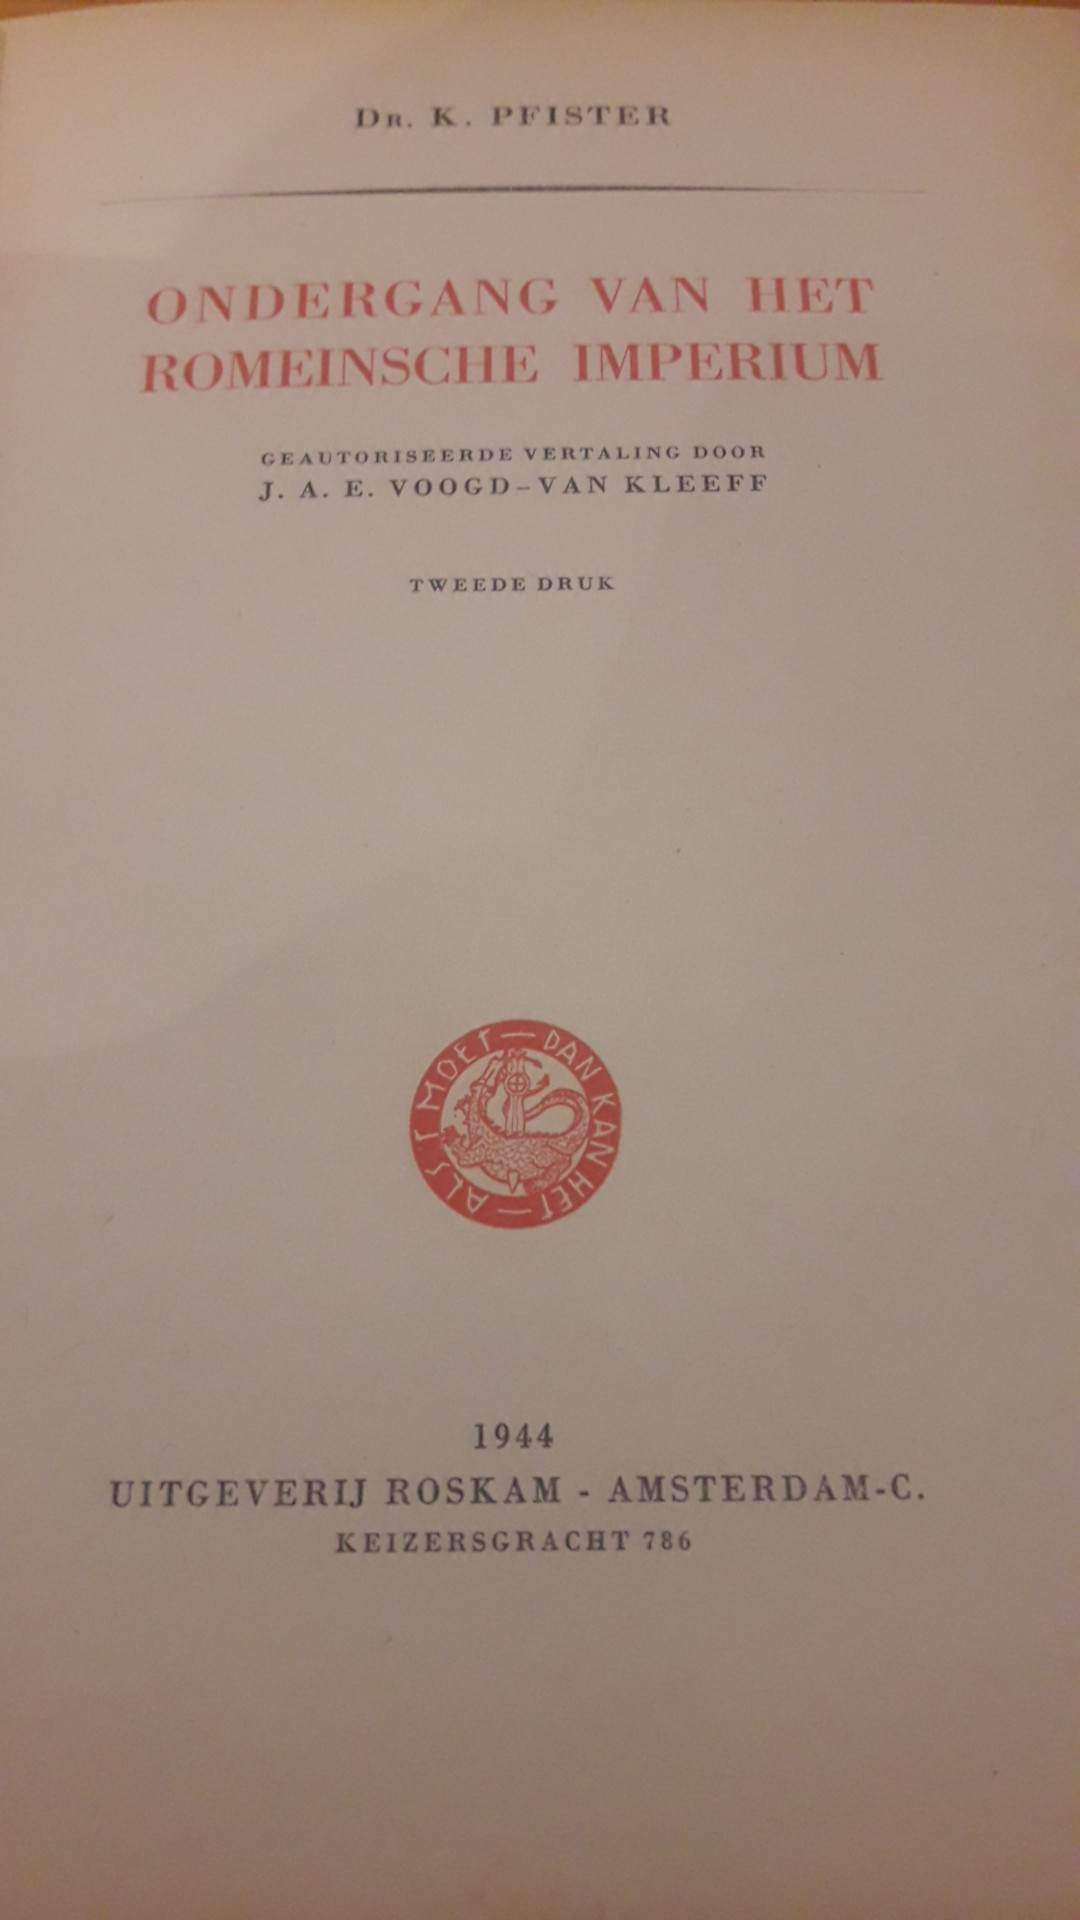 Ondergang van het Romeinsche imperium - 335 blz / ROSKAM 1944 Nederlandse collaboratie uitgeverij